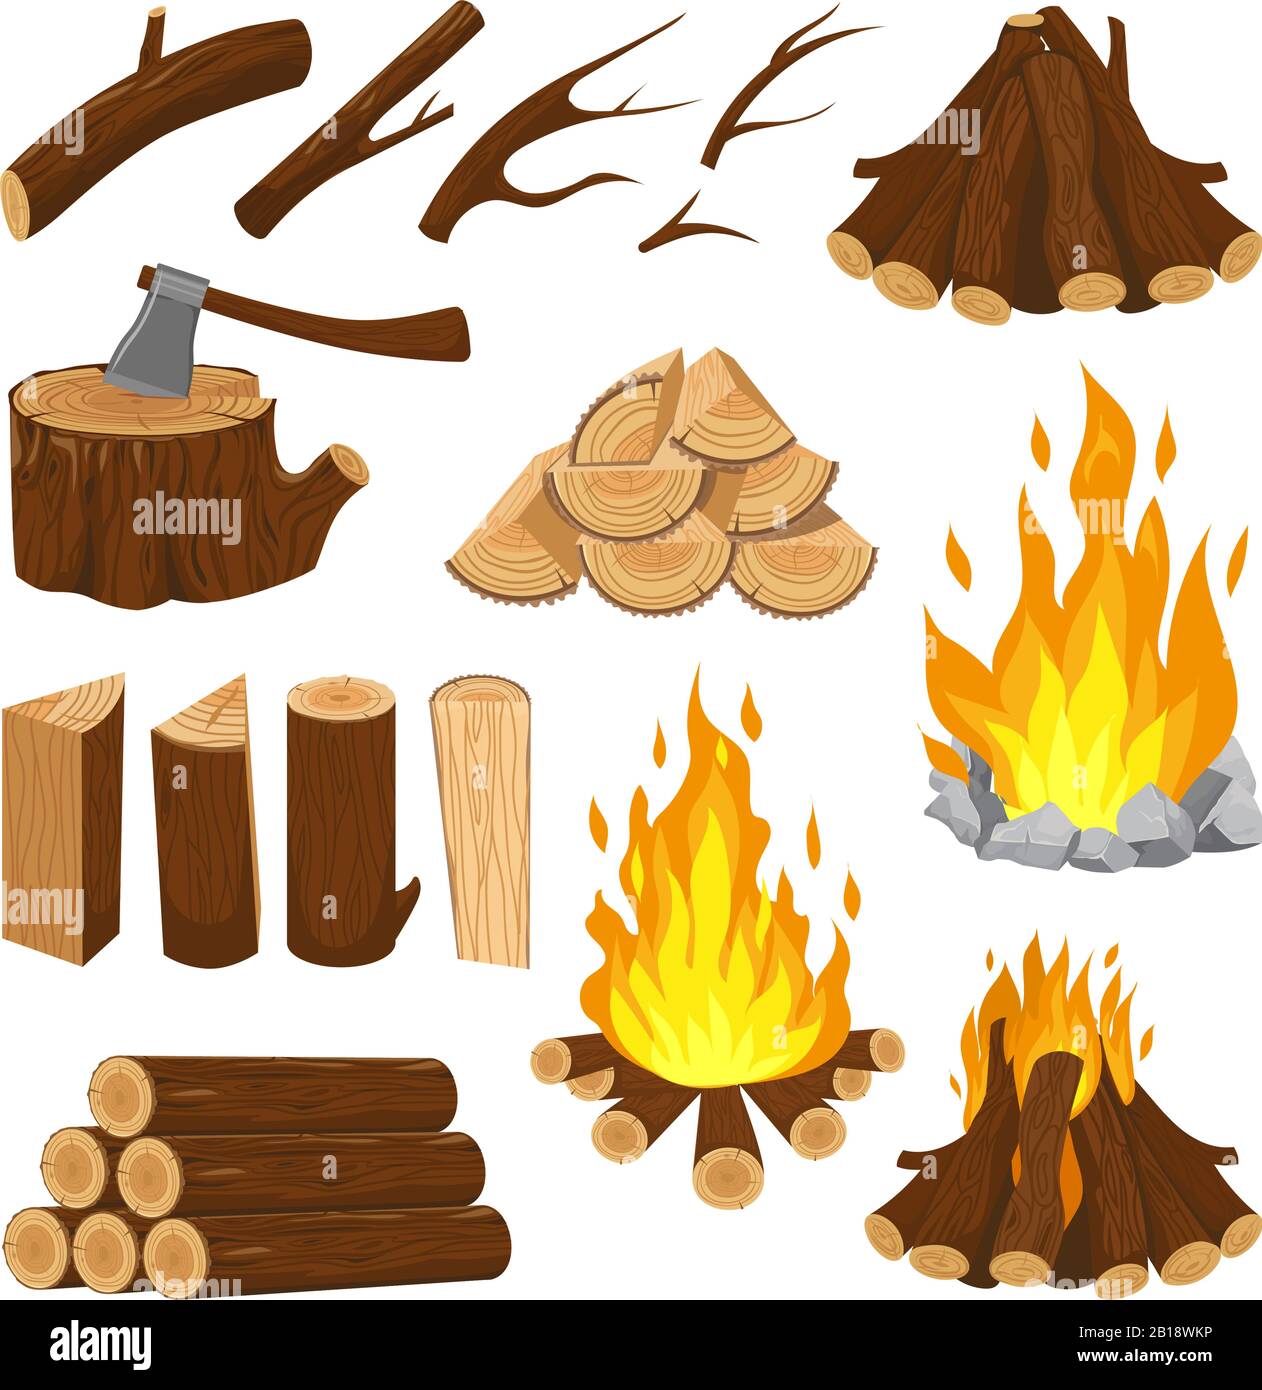 Bois de chauffage. Cheminée bois feu, cheminée pile en bois et feu de cheminée. Illustration vectorielle de dessin animé de pile de coupe de feu de camp Illustration de Vecteur